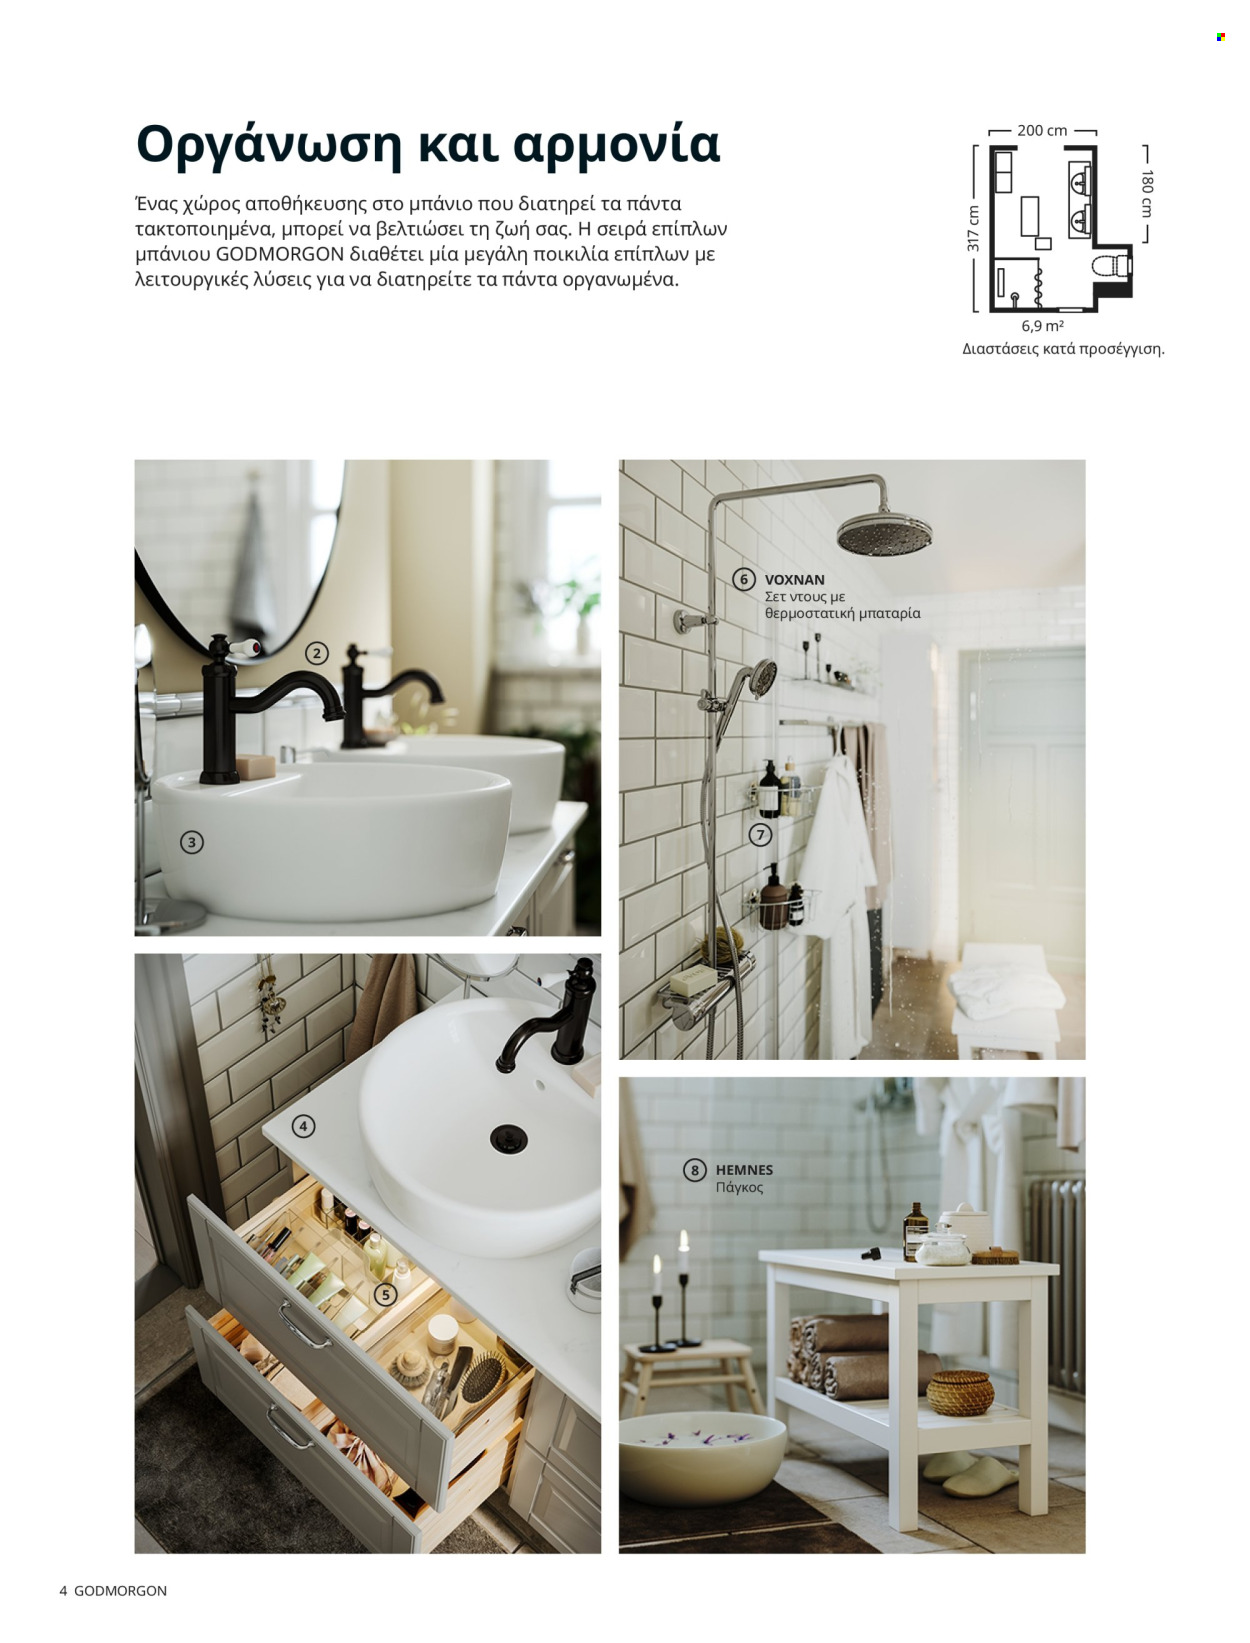 Φυλλάδια IKEA - Εκπτωτικά προϊόντα - πάγκος, συρταρι, ράφια, αποθήκευσης, mπαταρία. Σελίδα 4.